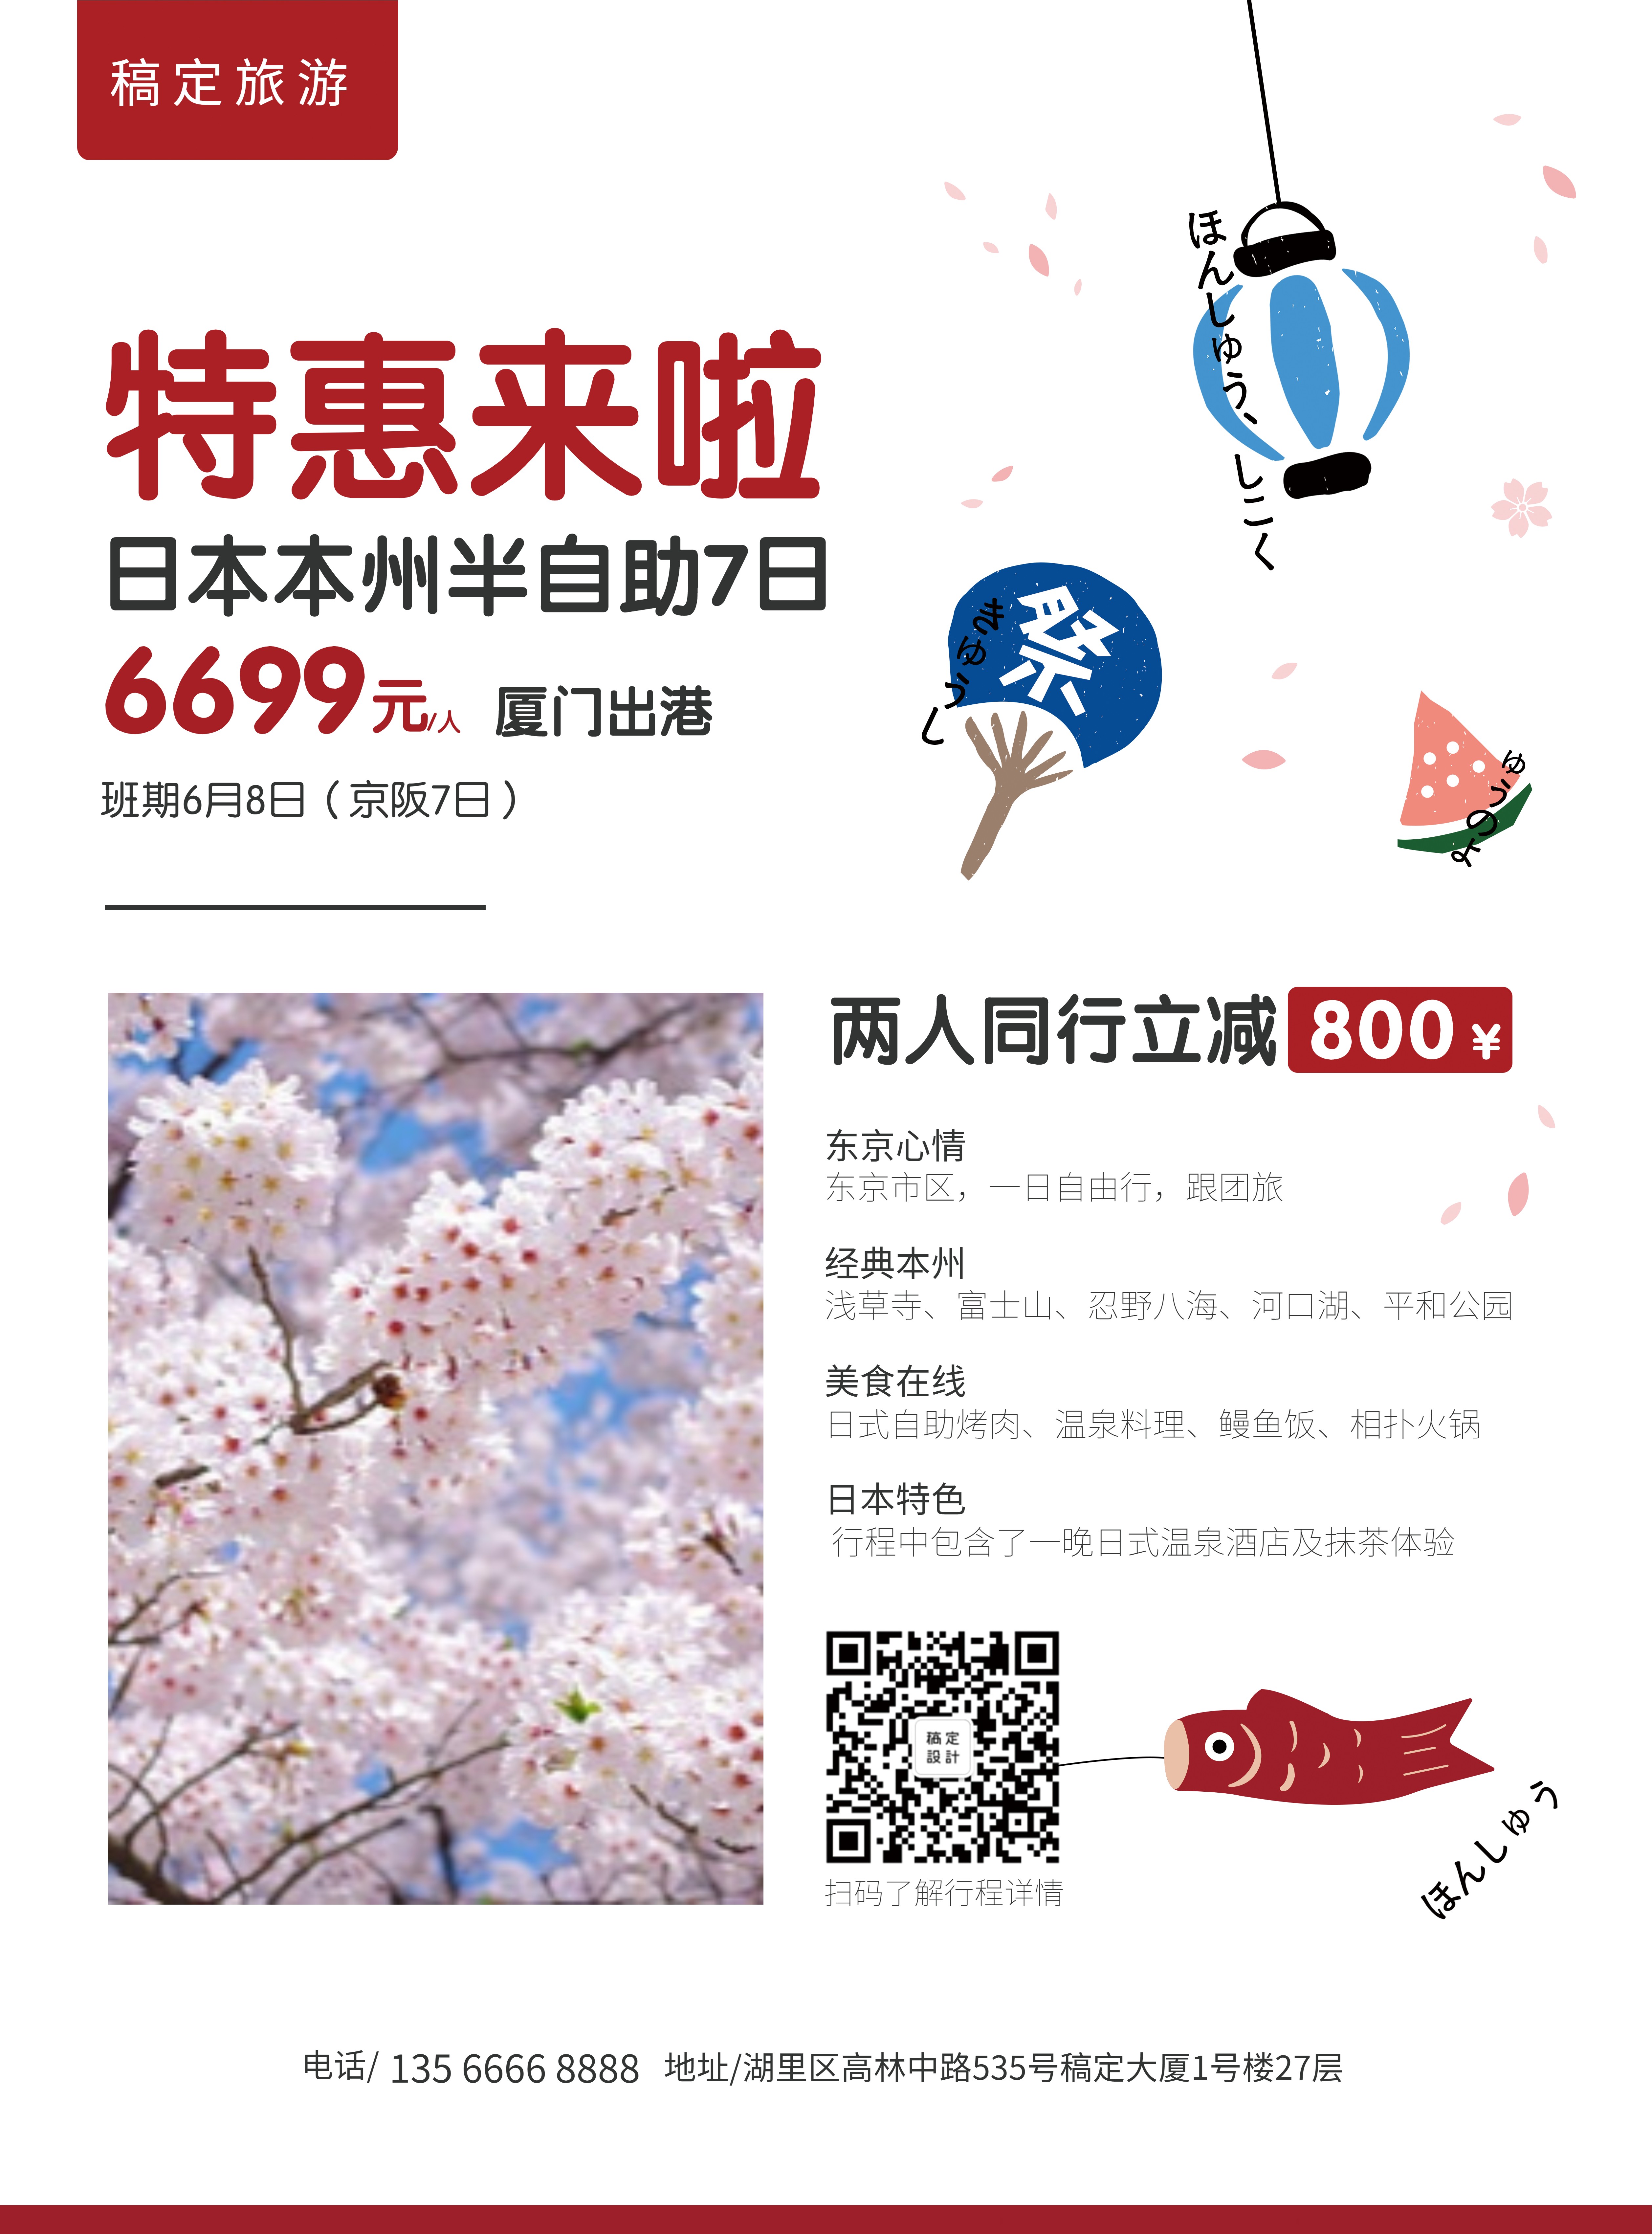 旅游出行日本游优惠折扣张贴海报